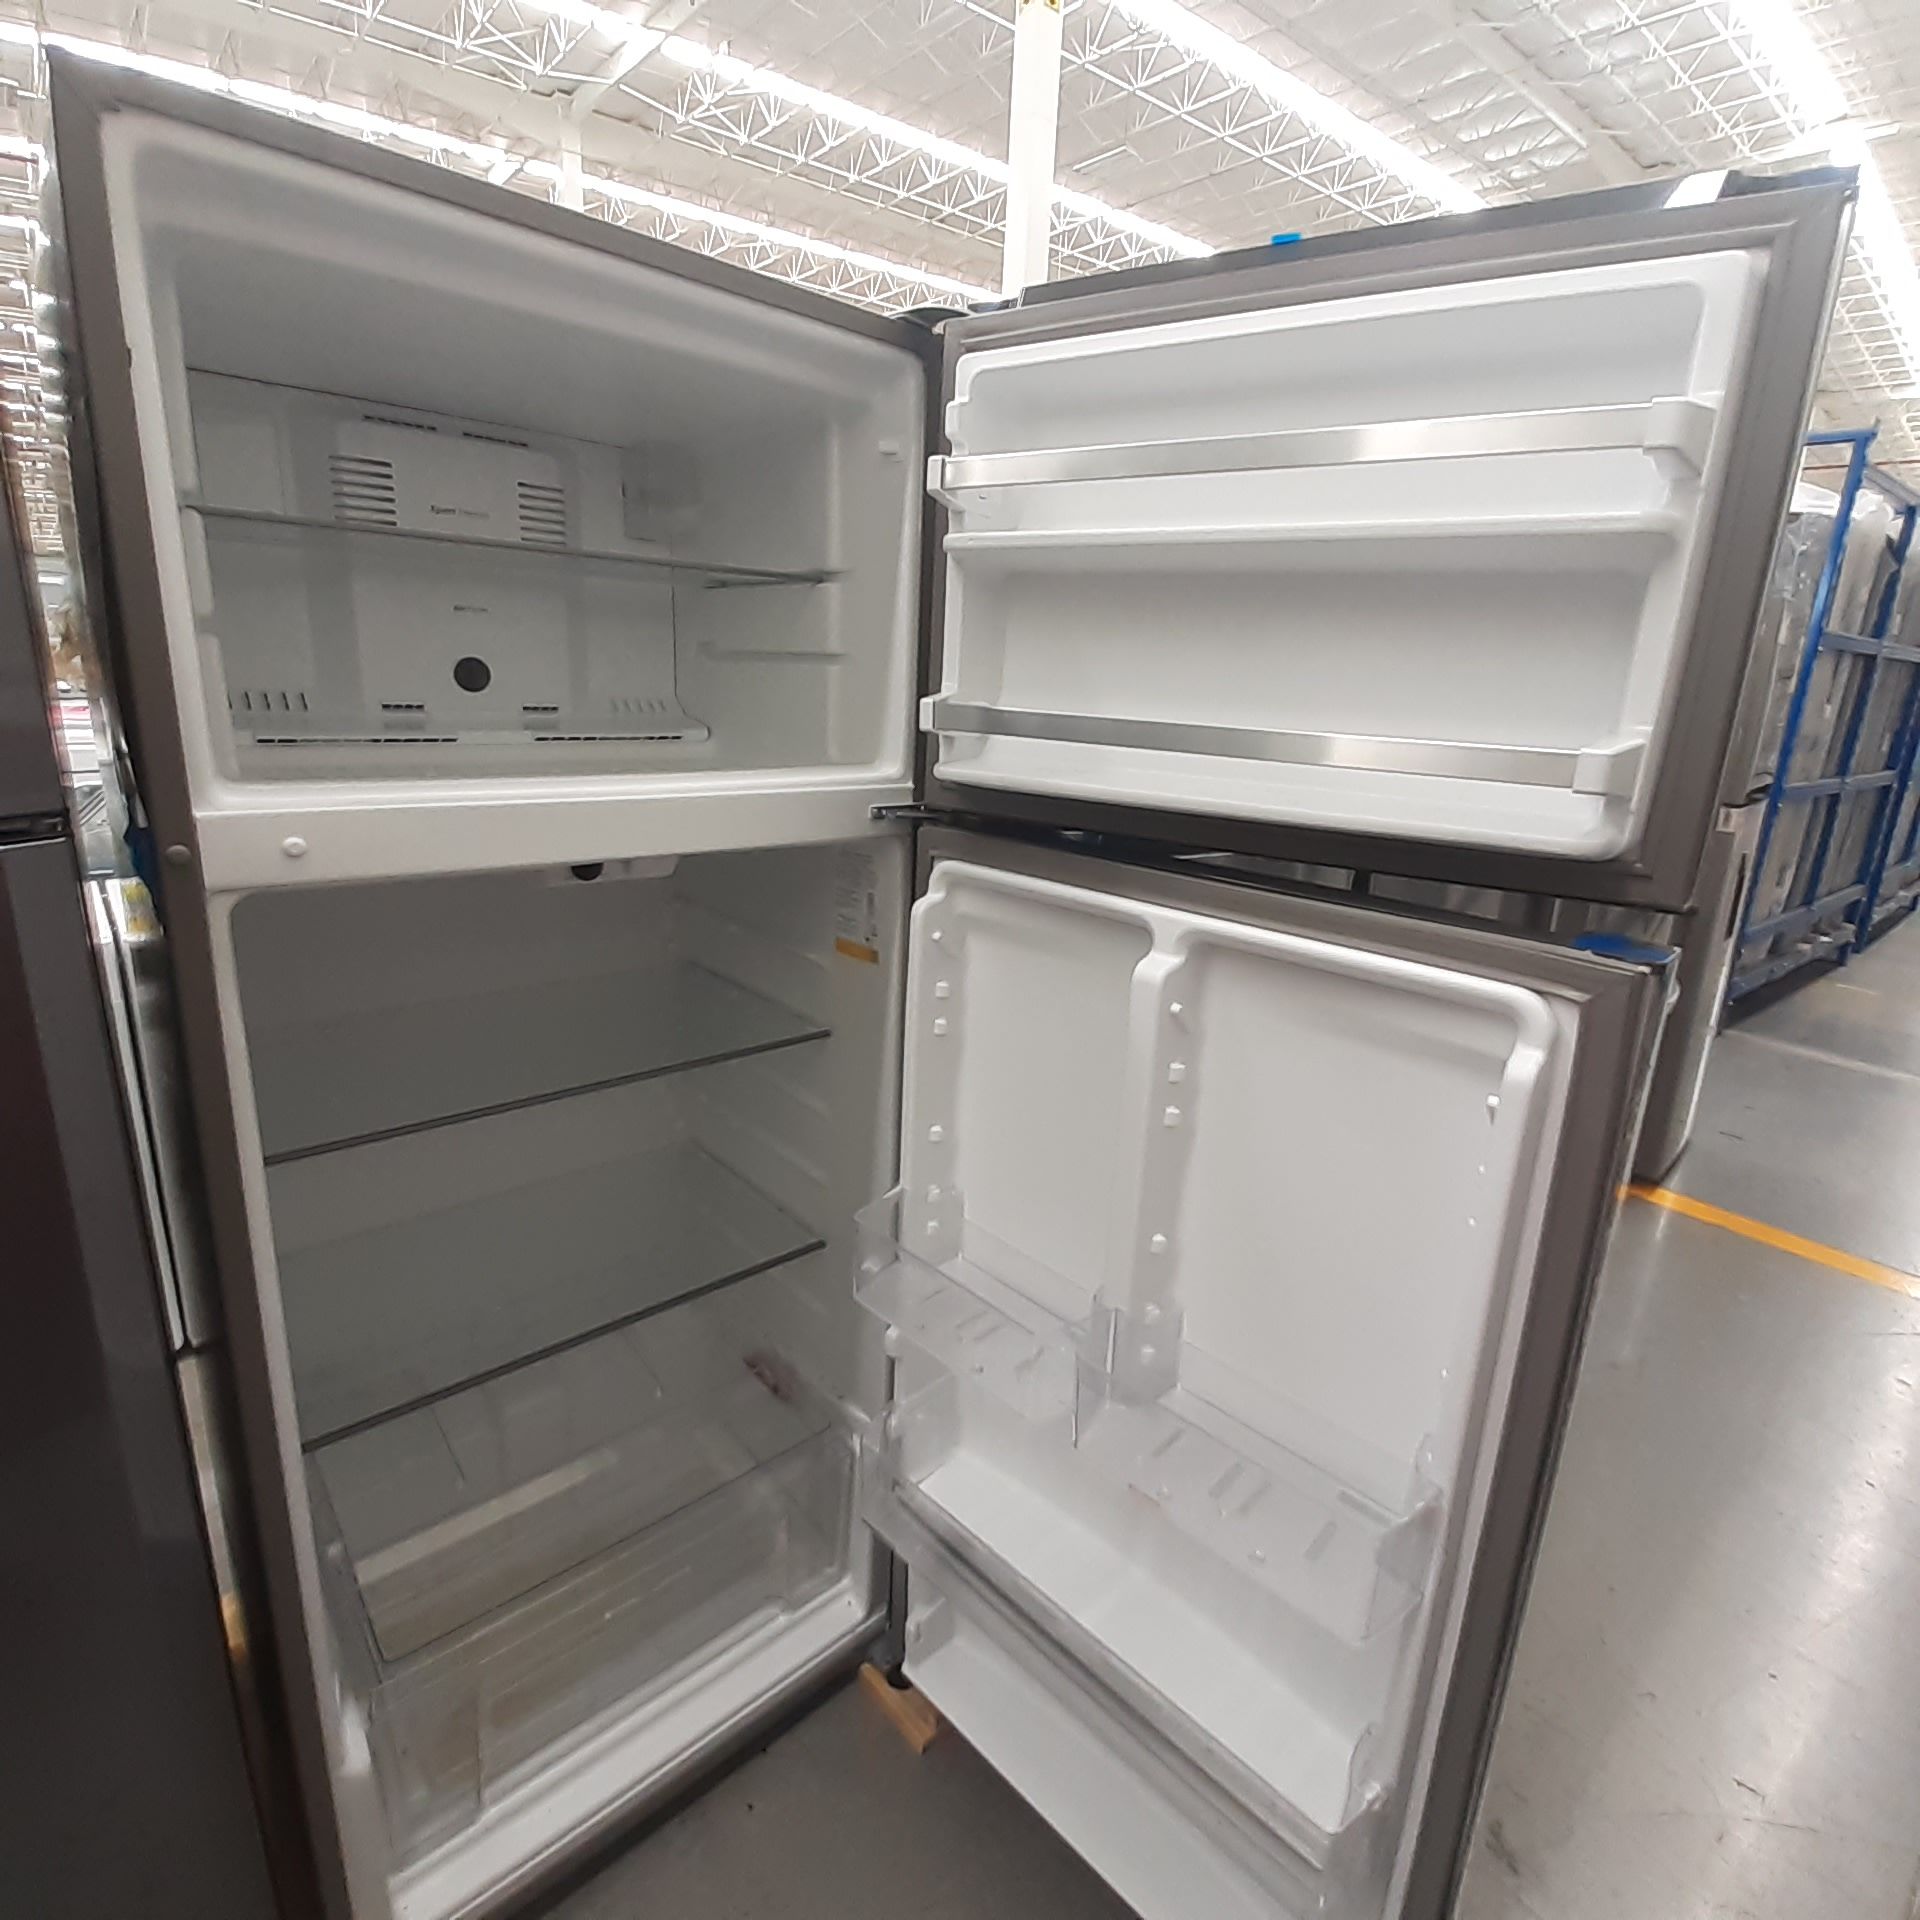 Lote De 2 Refrigeradores: 1 Refrigerador Marca Whirlpool, 1 Refrigerador Marca Mabe, Distintos Model - Image 16 of 22